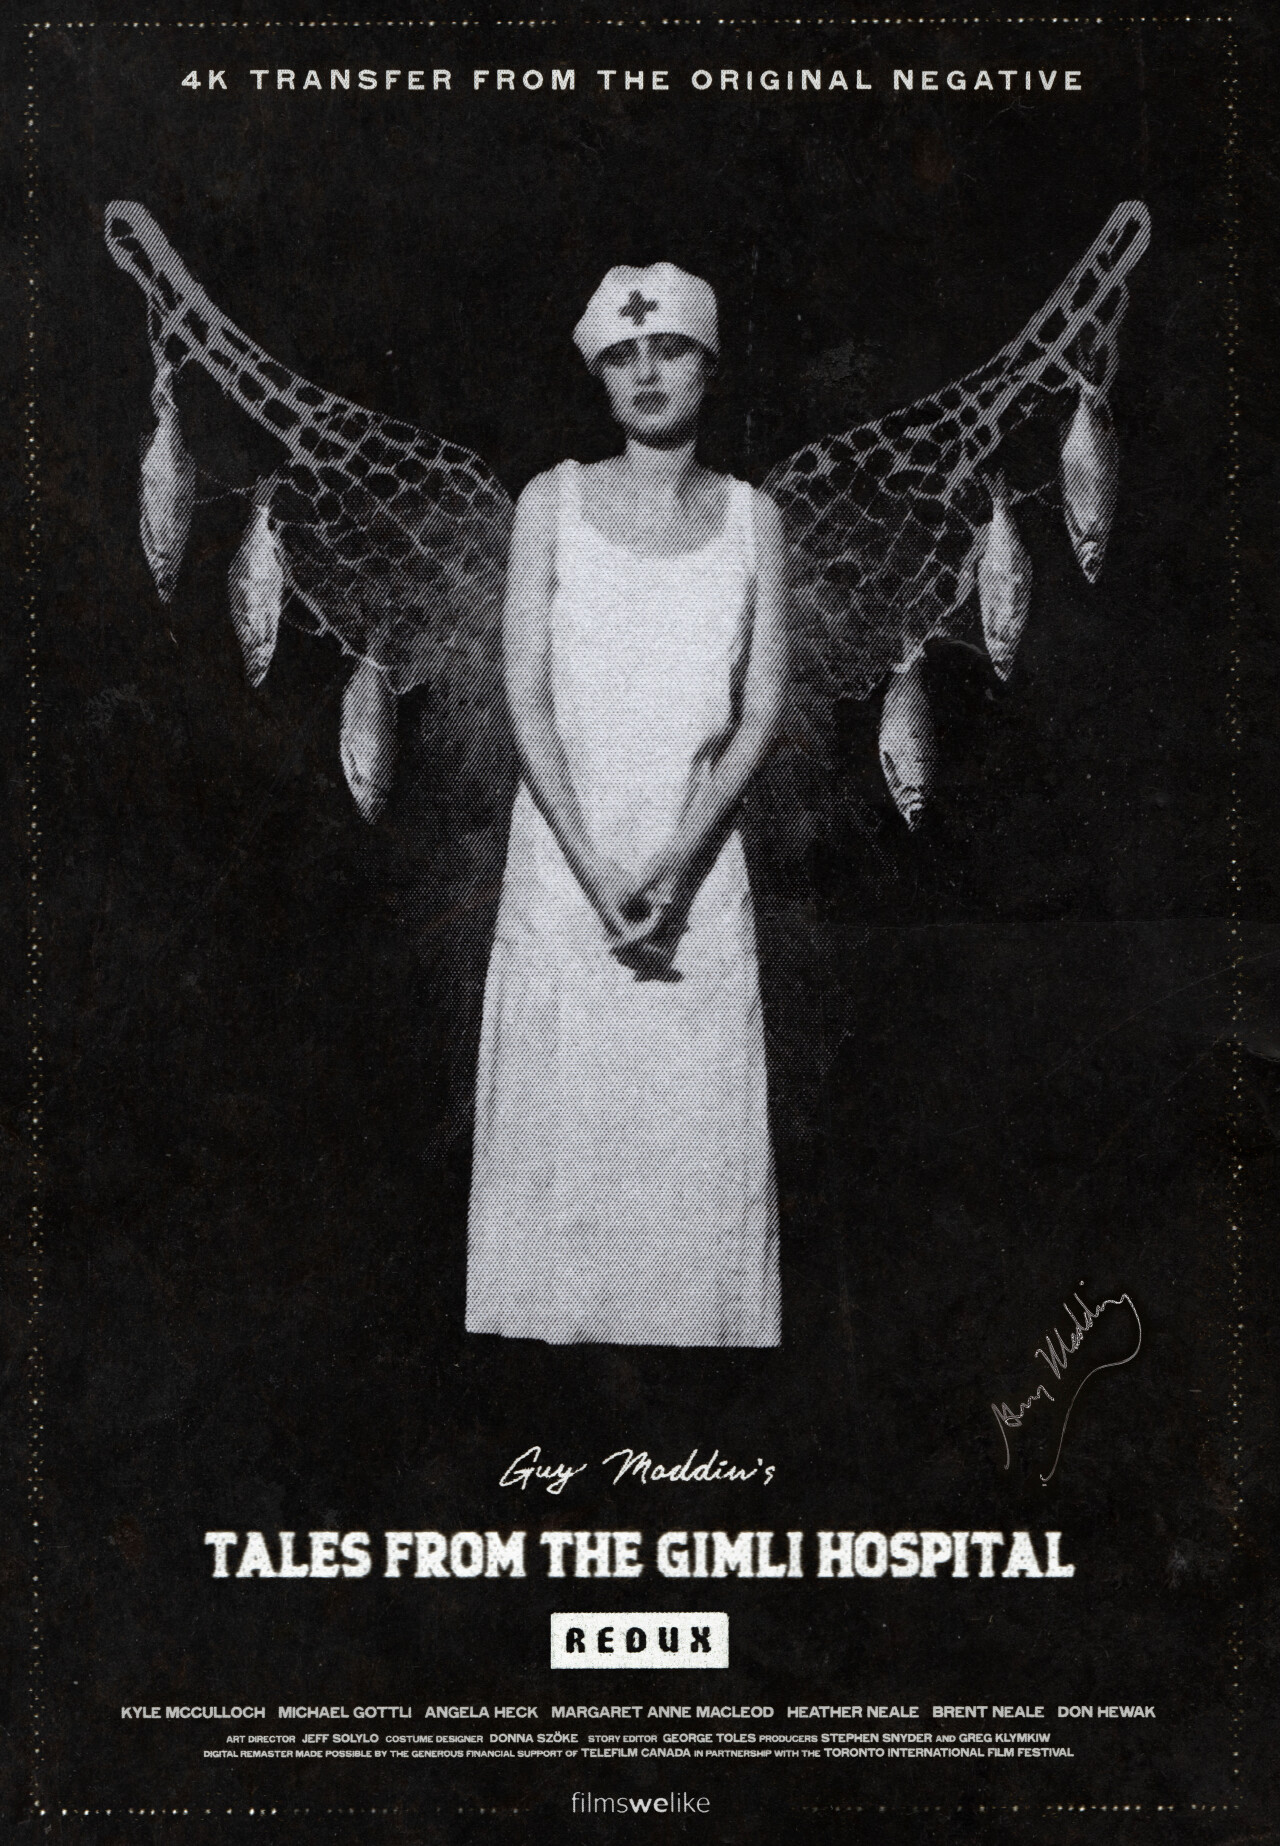 Сказки госпиталя Гимли (Tales from the Gimli Hospital, 1988), режиссёр Гай Мэддин, канадский постер к фильму, автор Гален Джонсон (ужасы, 2022 год)